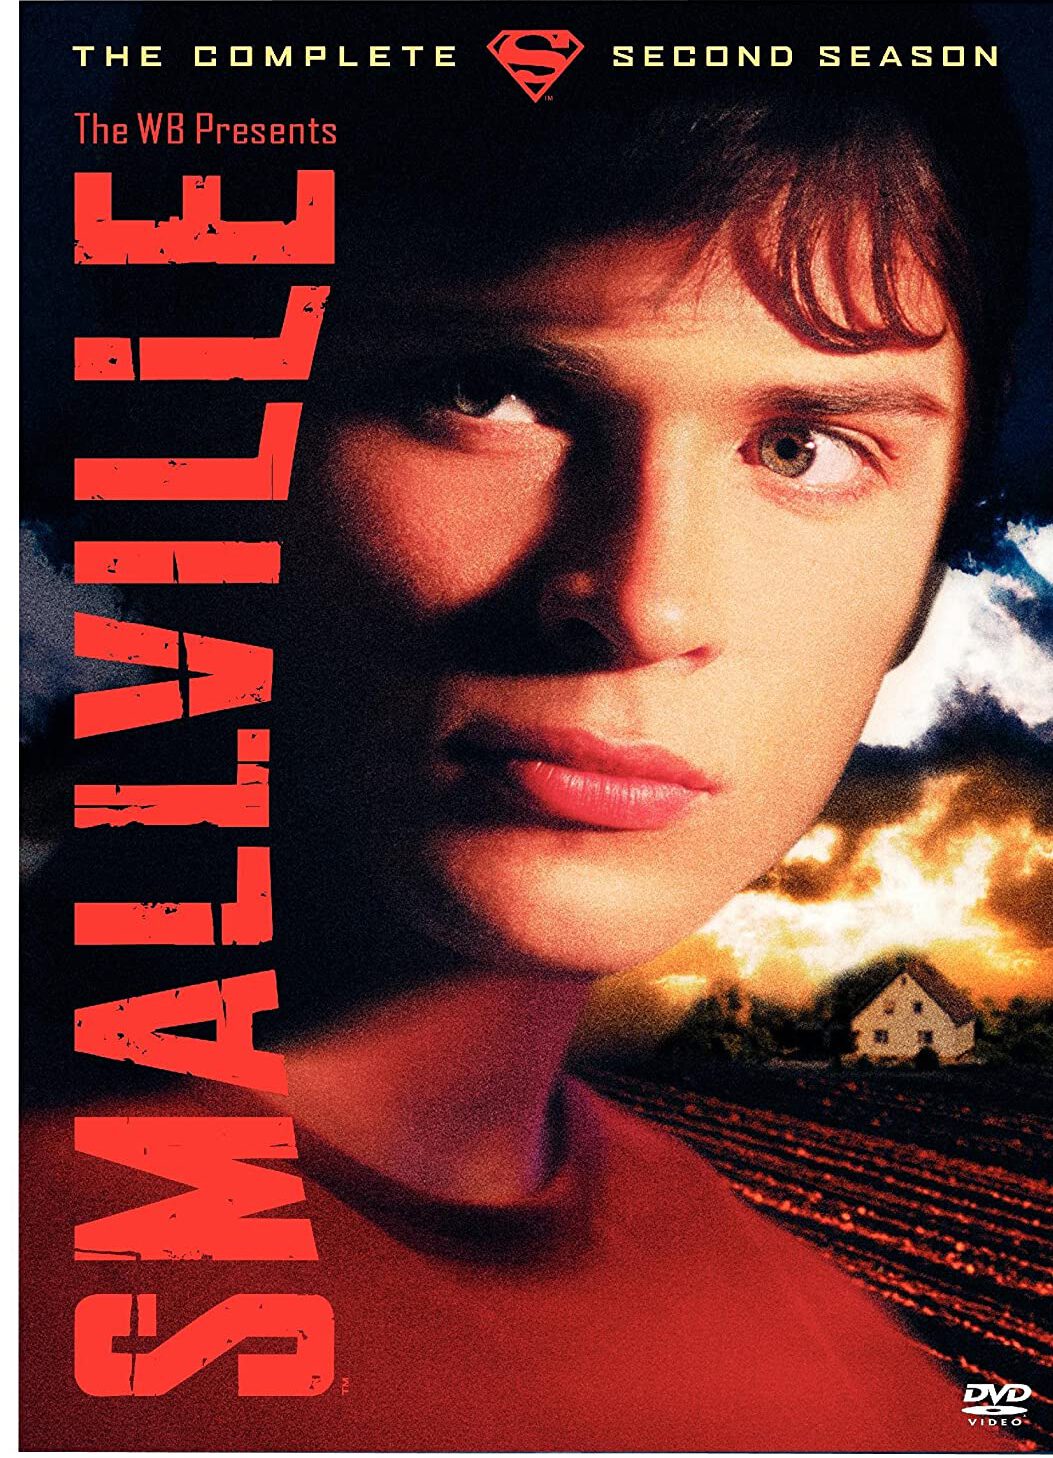 ดูหนังออนไลน์ฟรี Smallville สมอลวิลล์ หนุ่มน้อยซุปเปอร์แมน ปี 2 ตอนที่ 16